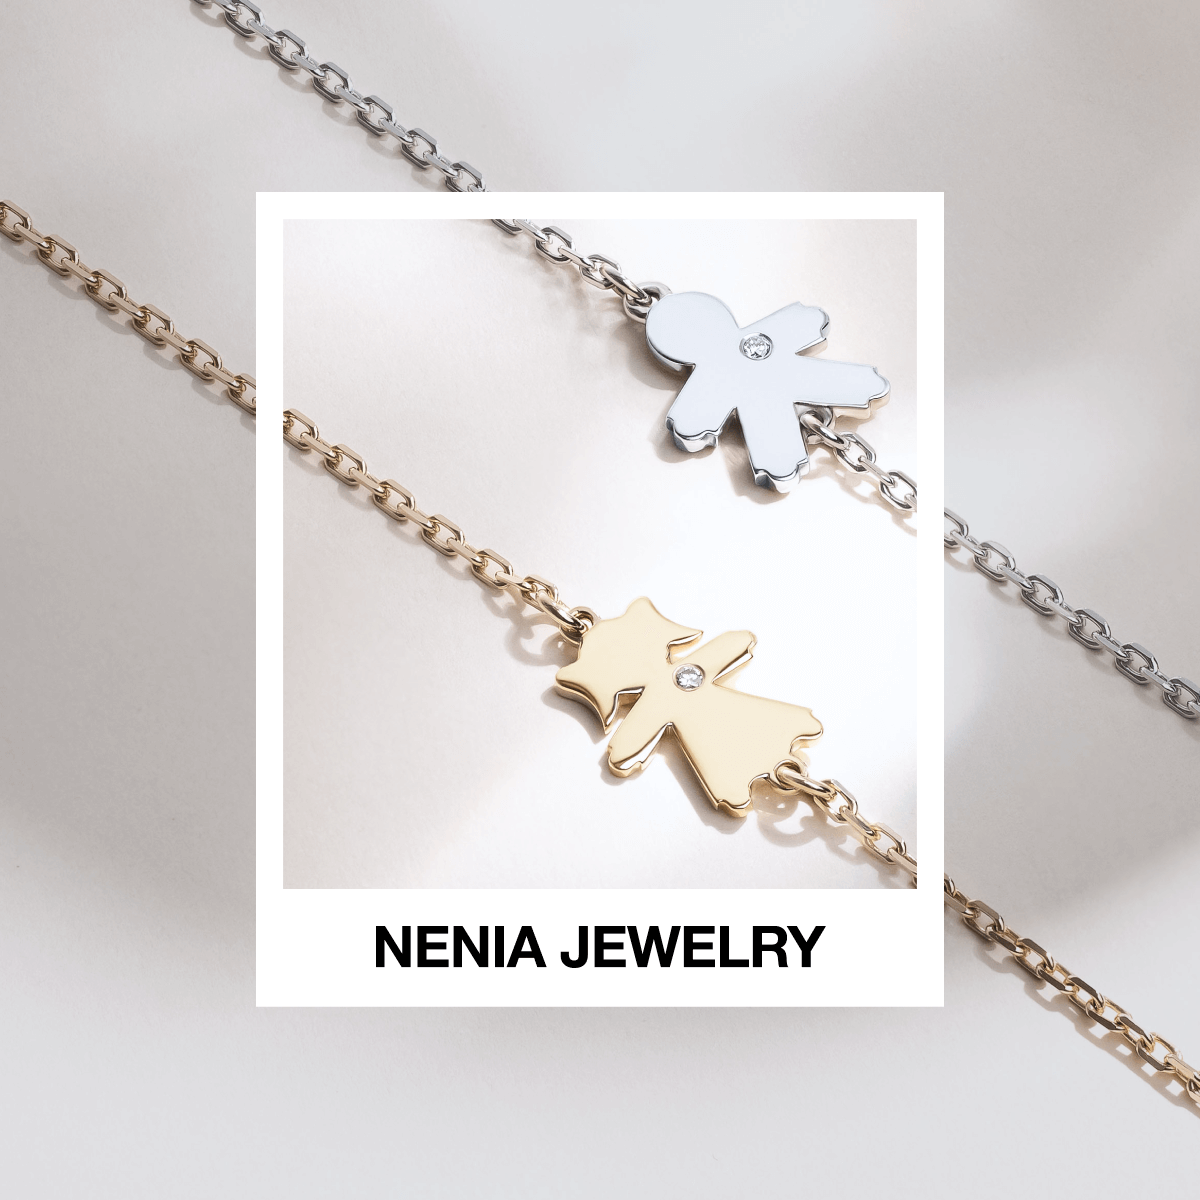 Nenia Jewelry - goodface.agency